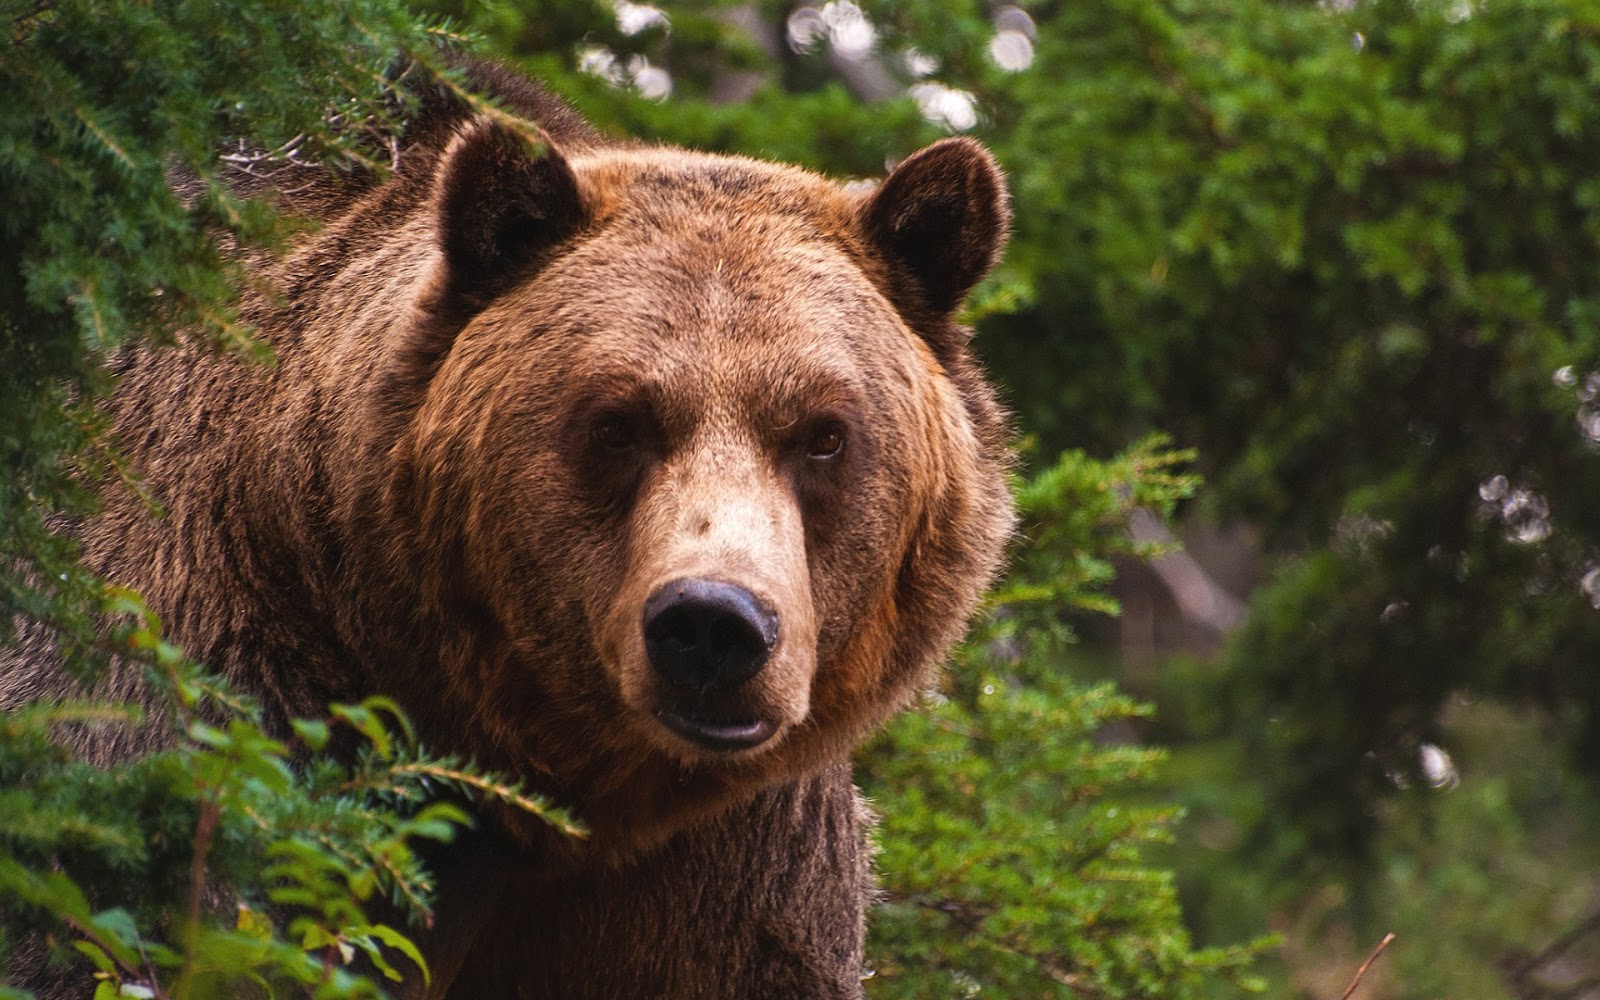 Fondo de Pantalla Animales Mirada fija de oso grande | Imagenes Hilandy